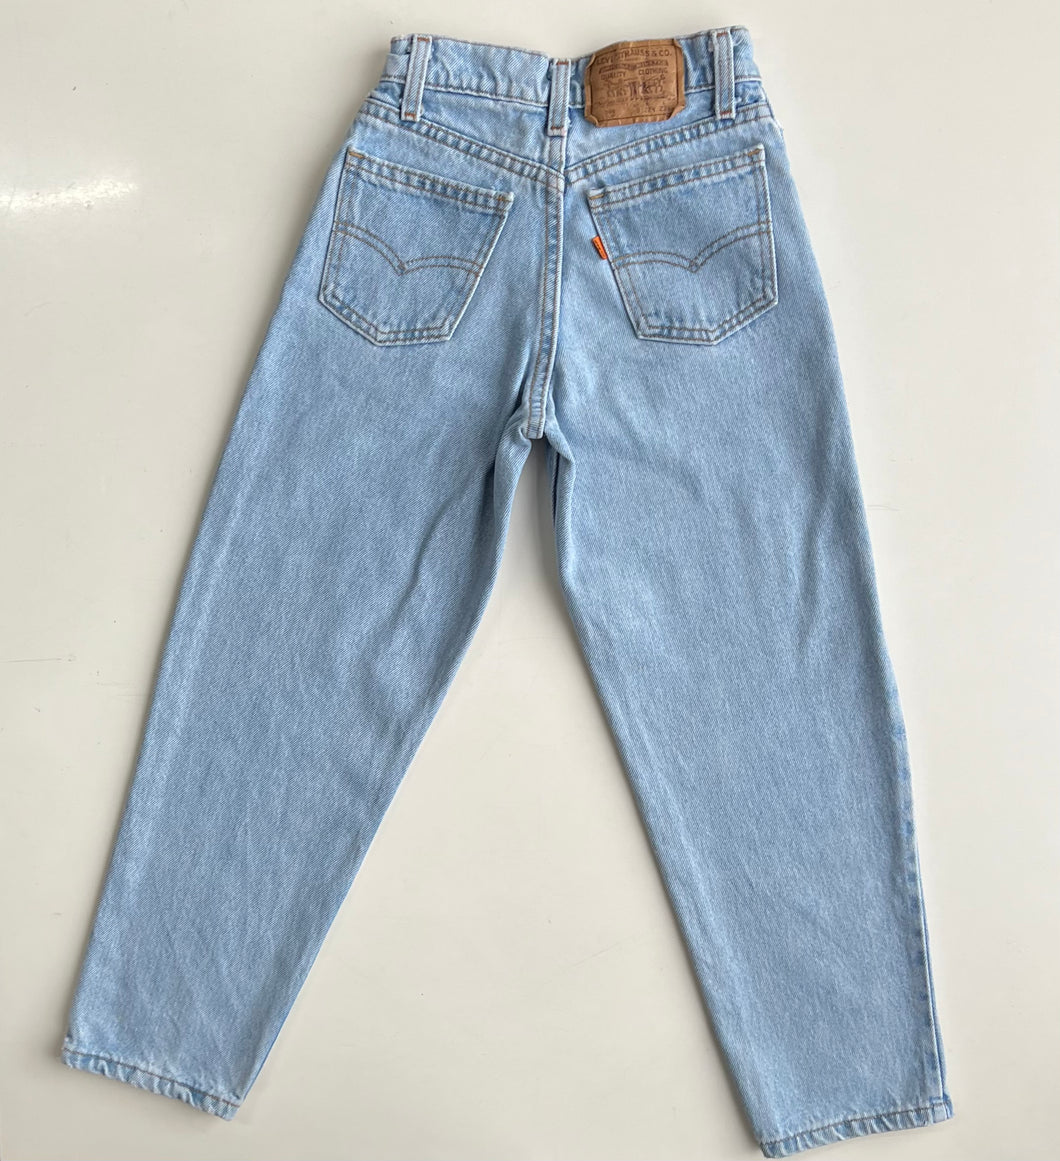 Levi’s 560 jeans (Age 9)